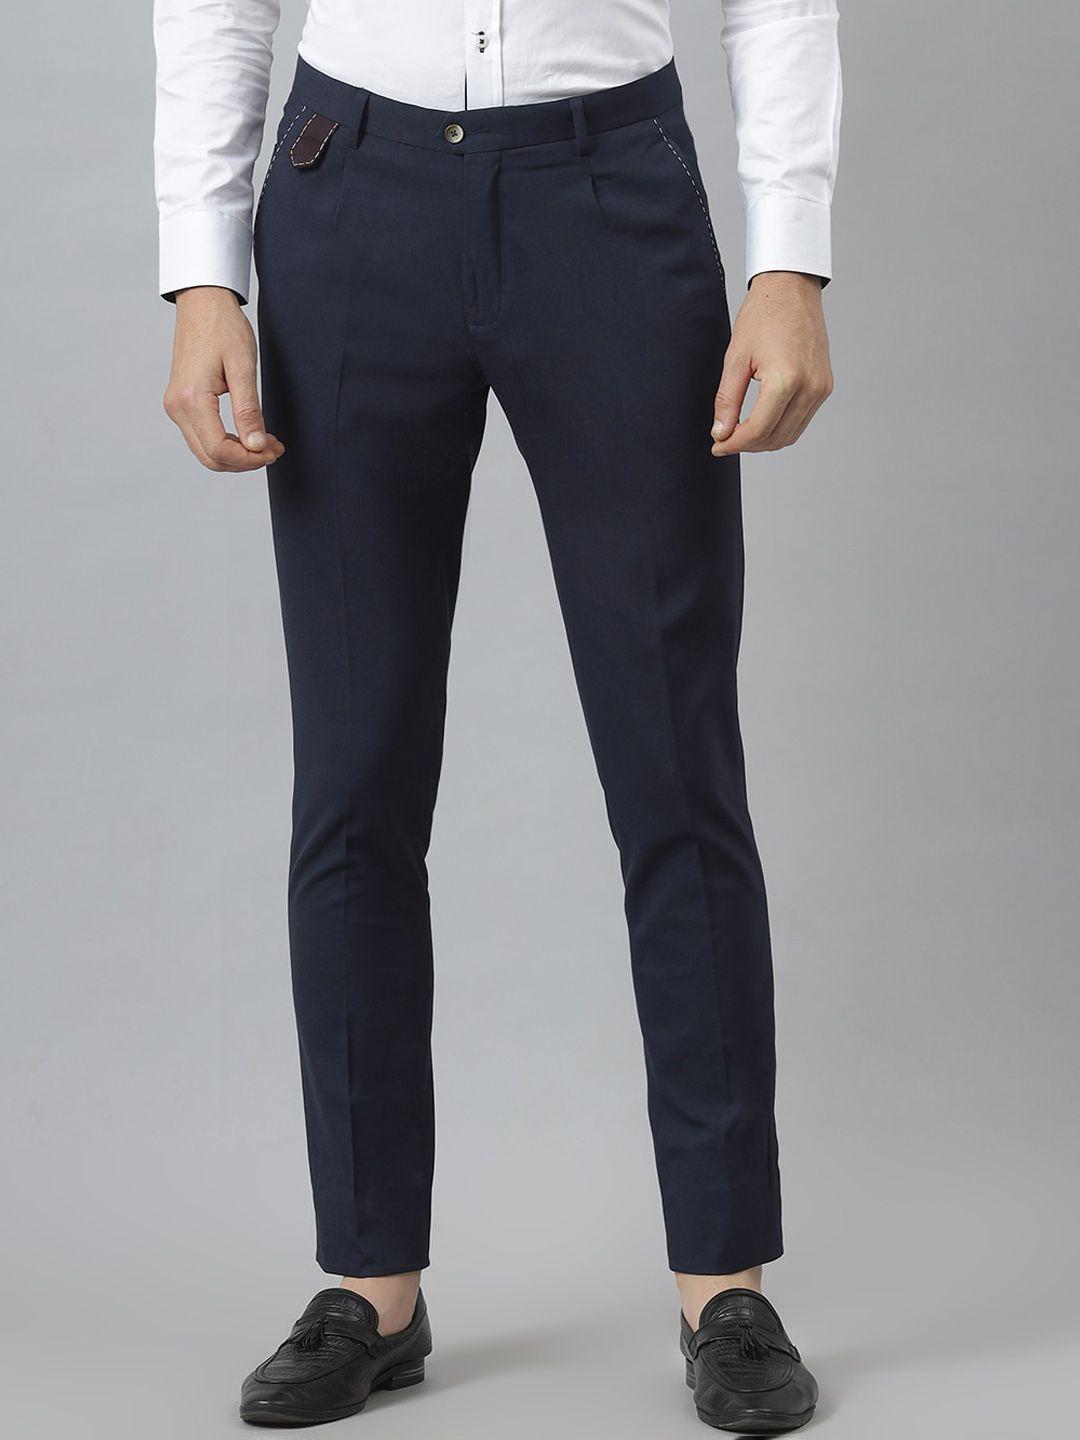 mr-button-men-blue-slim-fit-formal-trousers